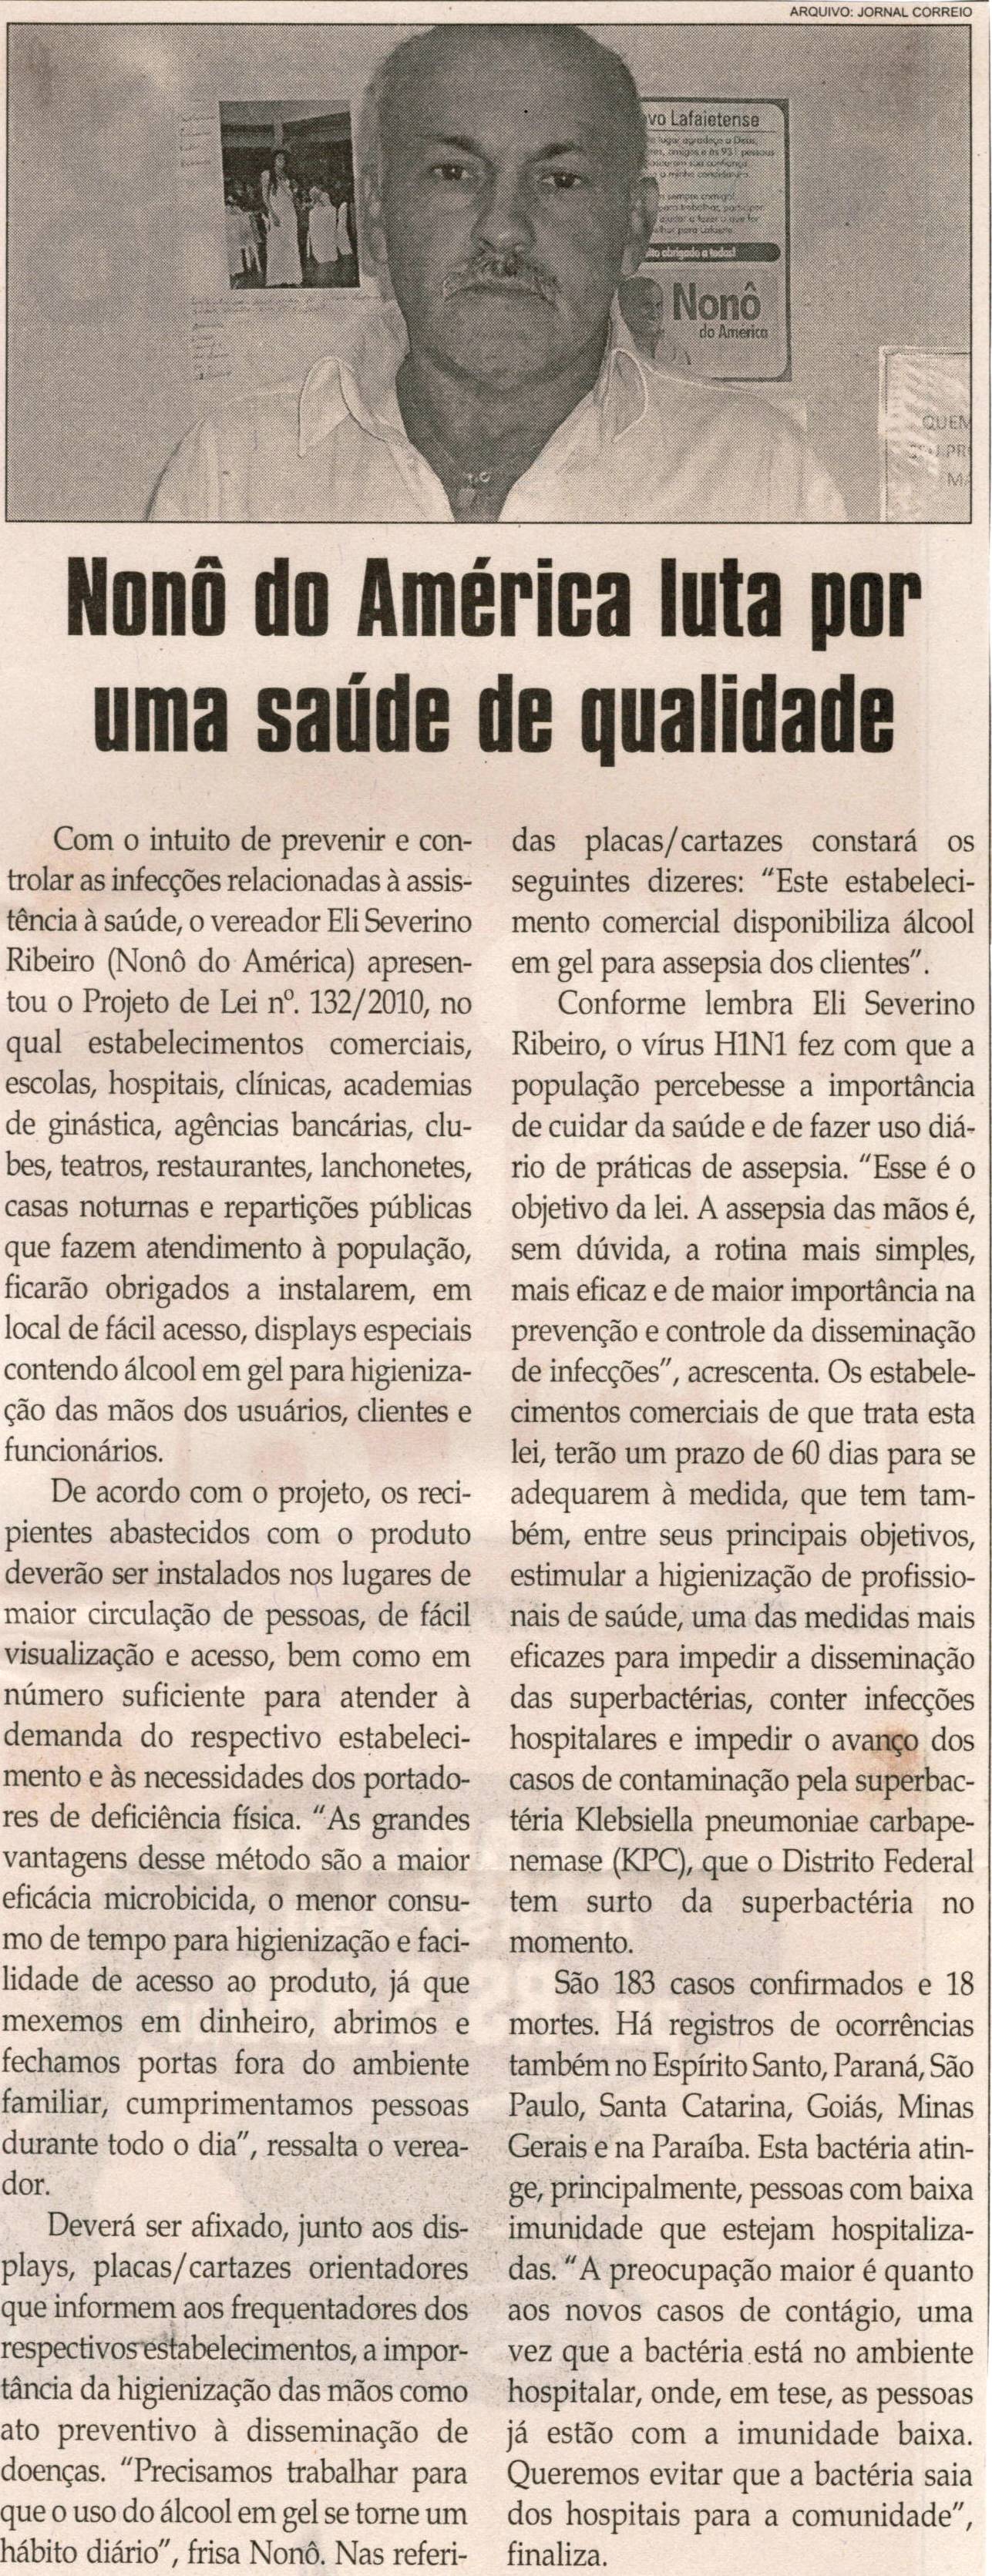 Nonô do América luta por uma saúde de qualidade. Jornal Correio da Cidade, Conselheiro Lafaiete,  06 nov. 2010, p. 04.